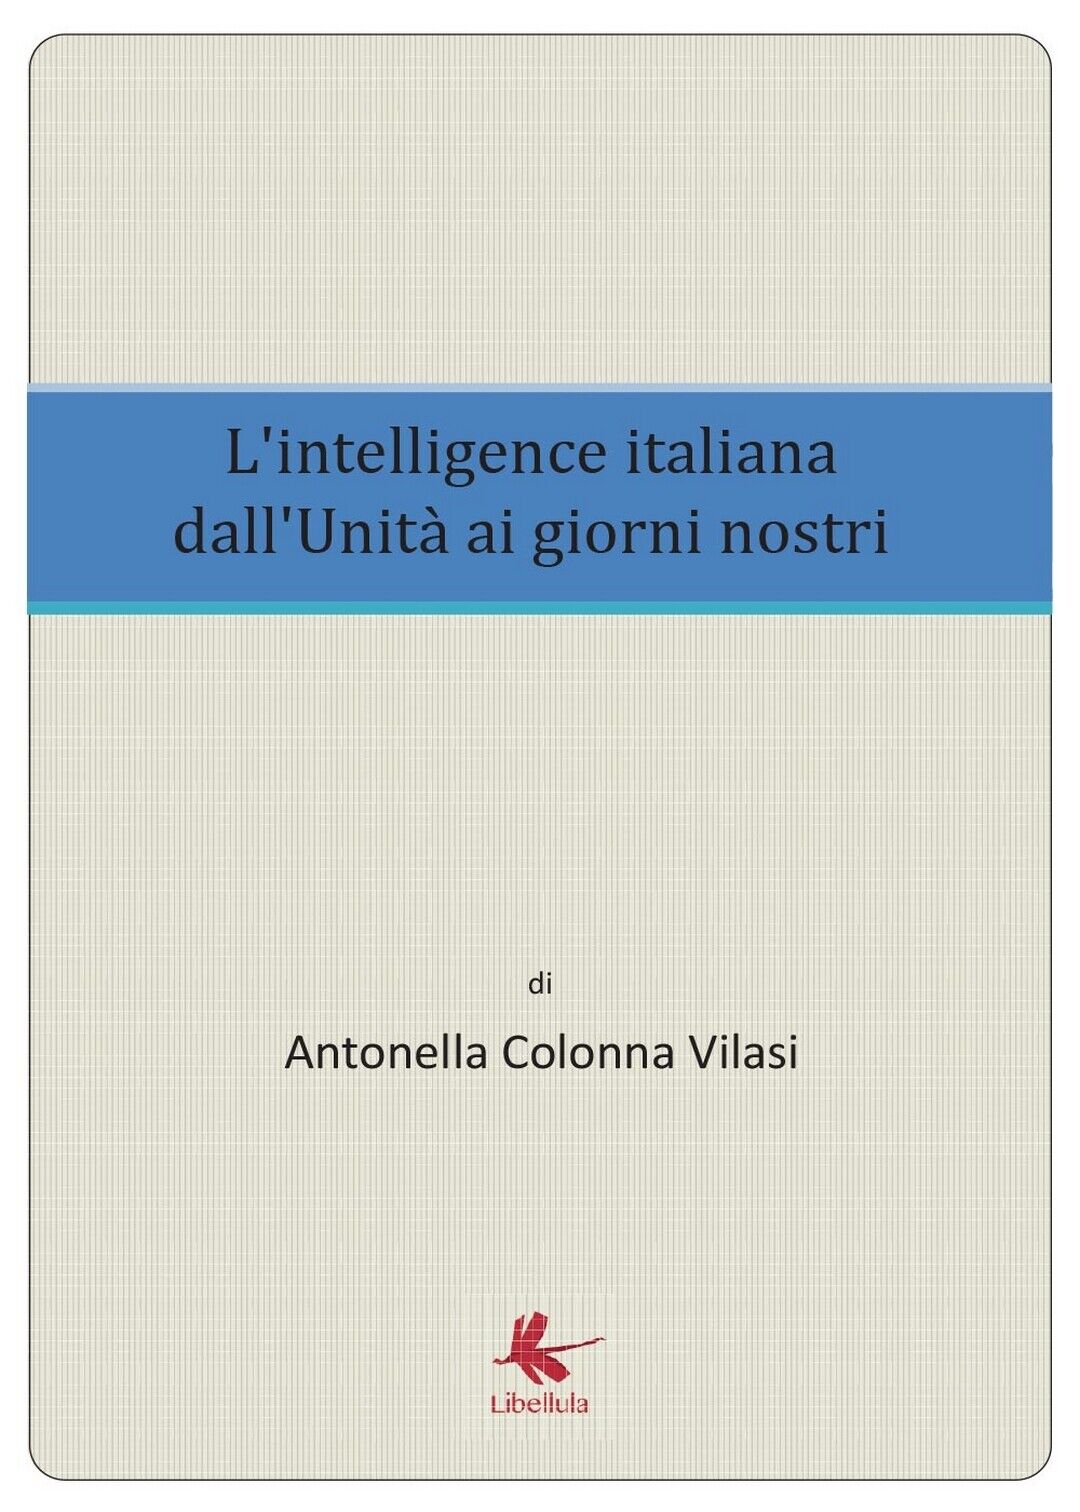 L'intelligence italiana dalL'Unit? ai giorni nostri, di Antonella Colonna Vilasi libro usato